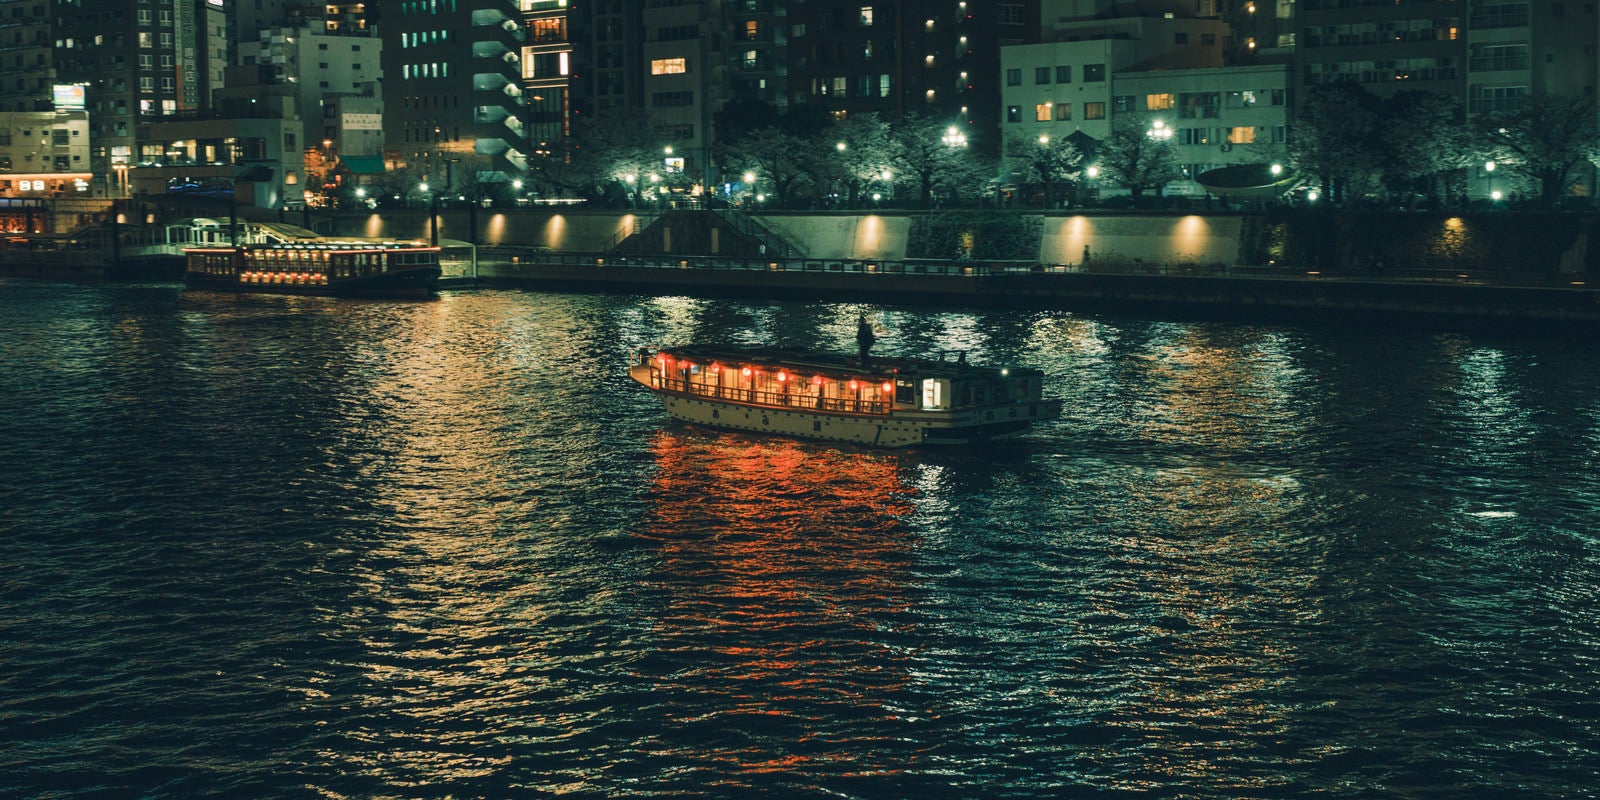 「隅田川に浮かぶ屋形船と水上バス」の写真